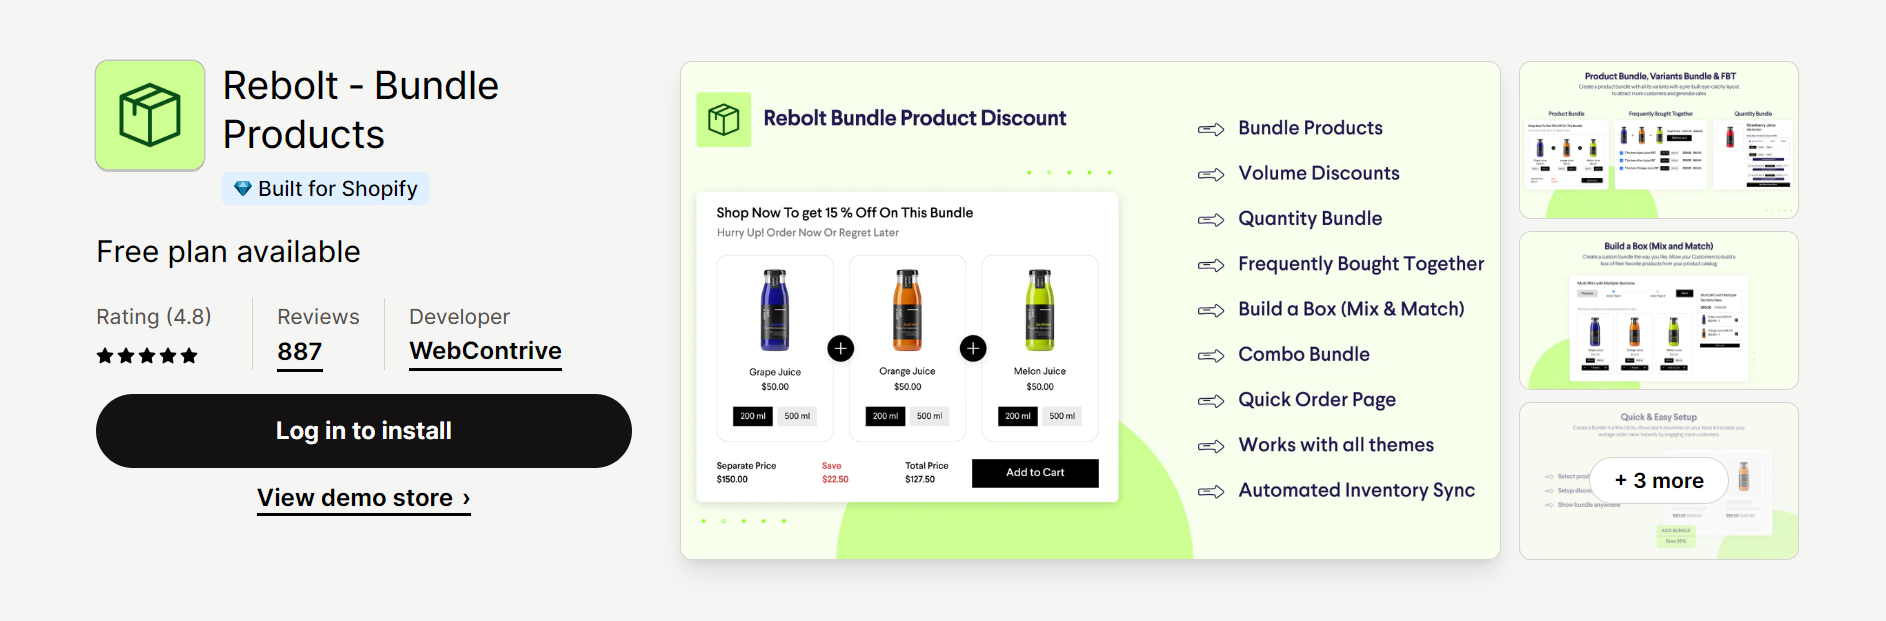 Rebolt ‑ Bundle Products